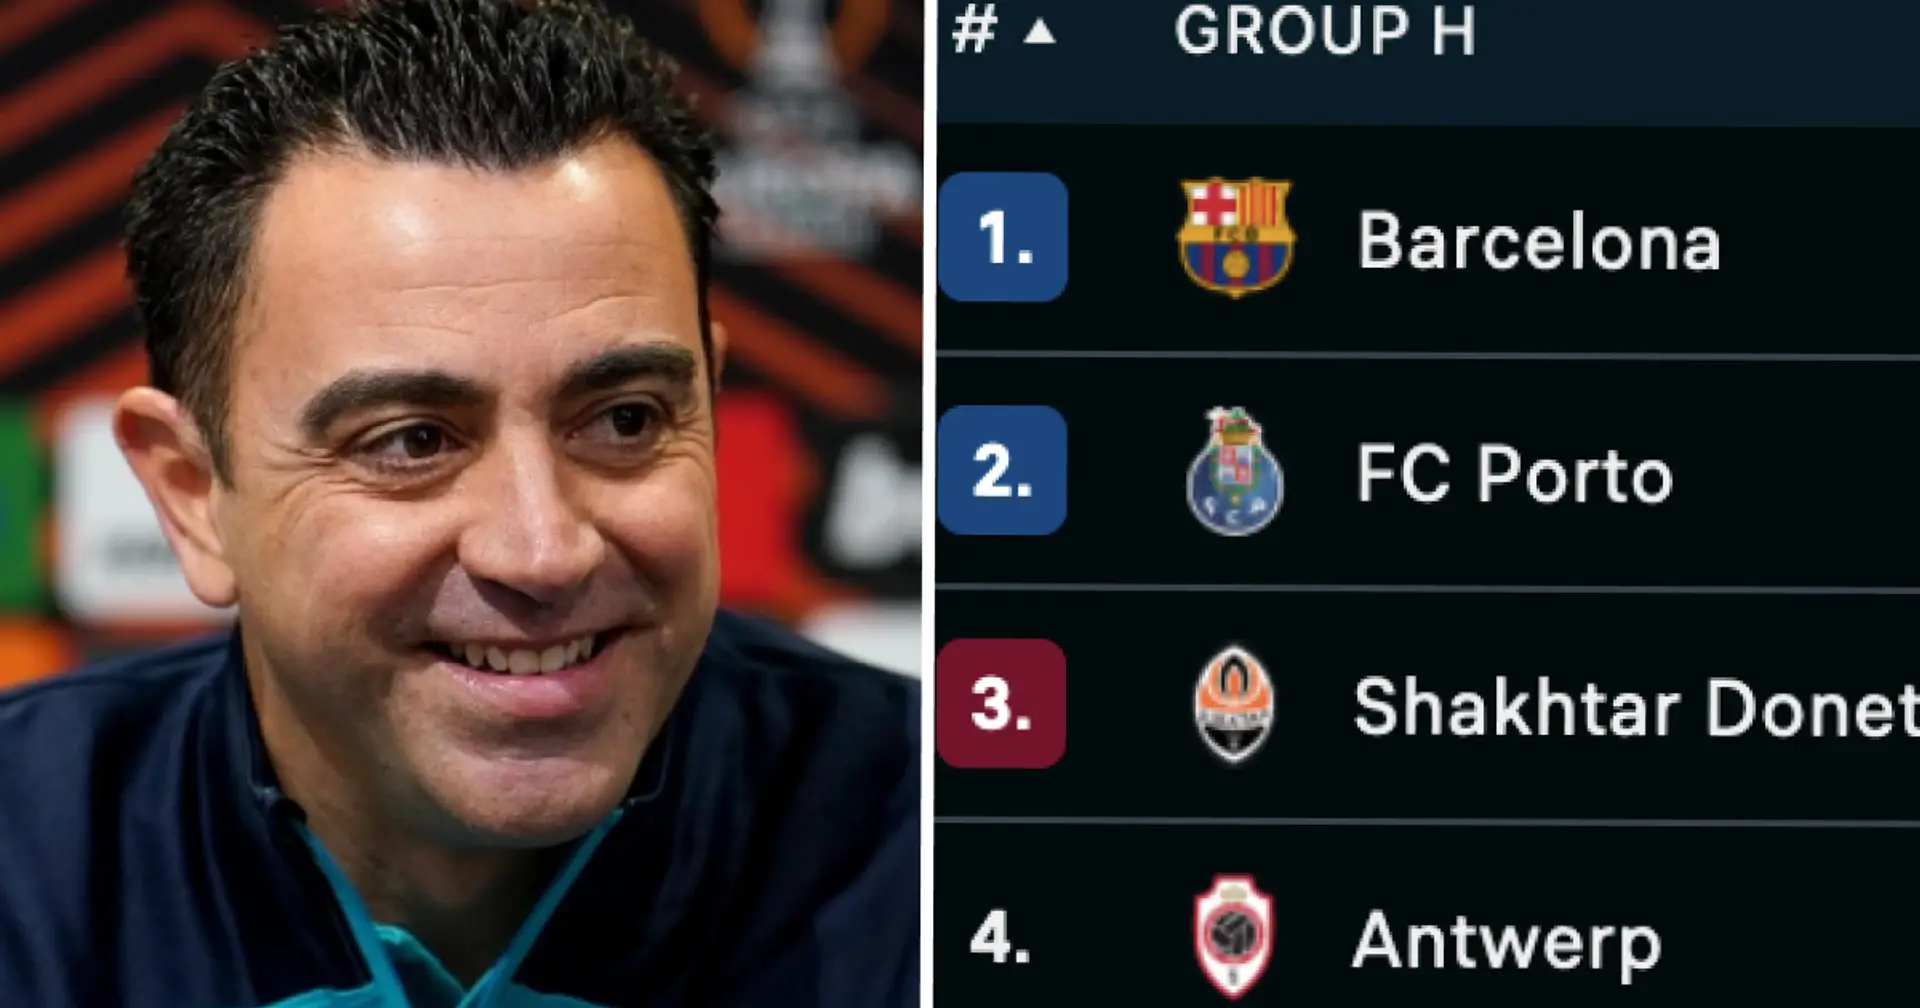 Le Barça à égalité avec Porto : classement dans le groupe H de la Ligue des Champions après la 4e journée